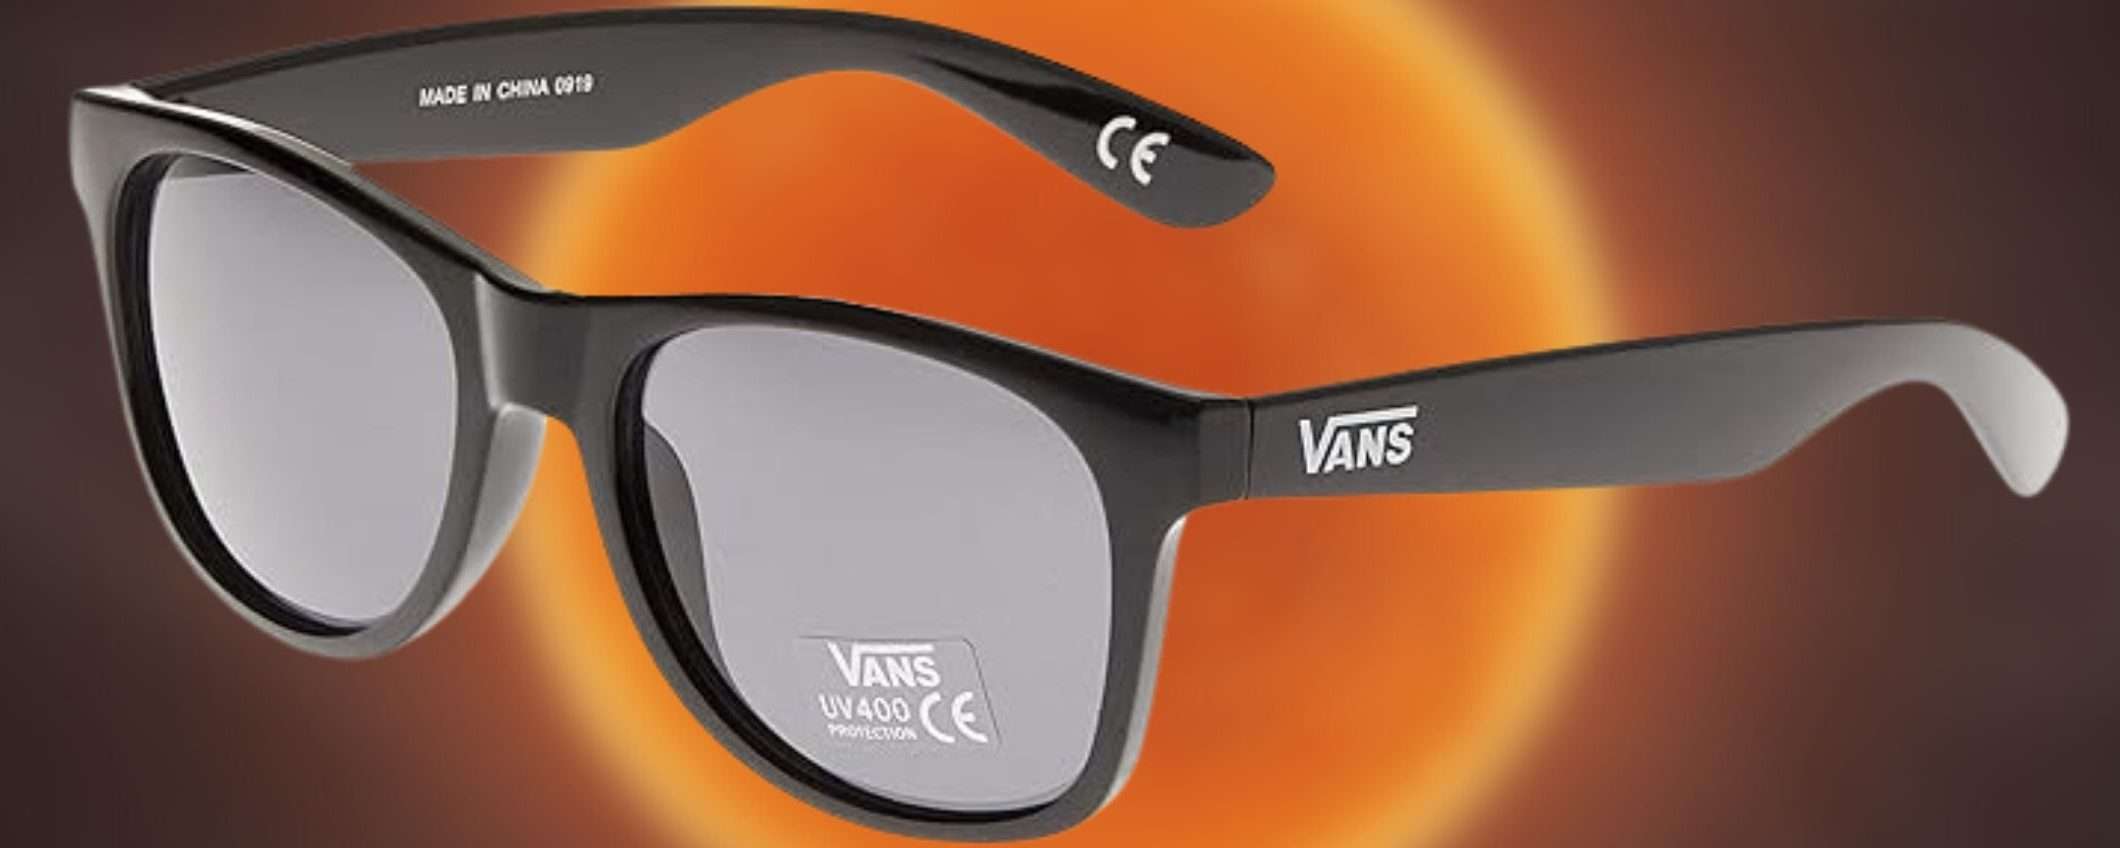 VANS: solo 14€ per gli ICONICI occhiali da sole di ottima qualità (Amazon)